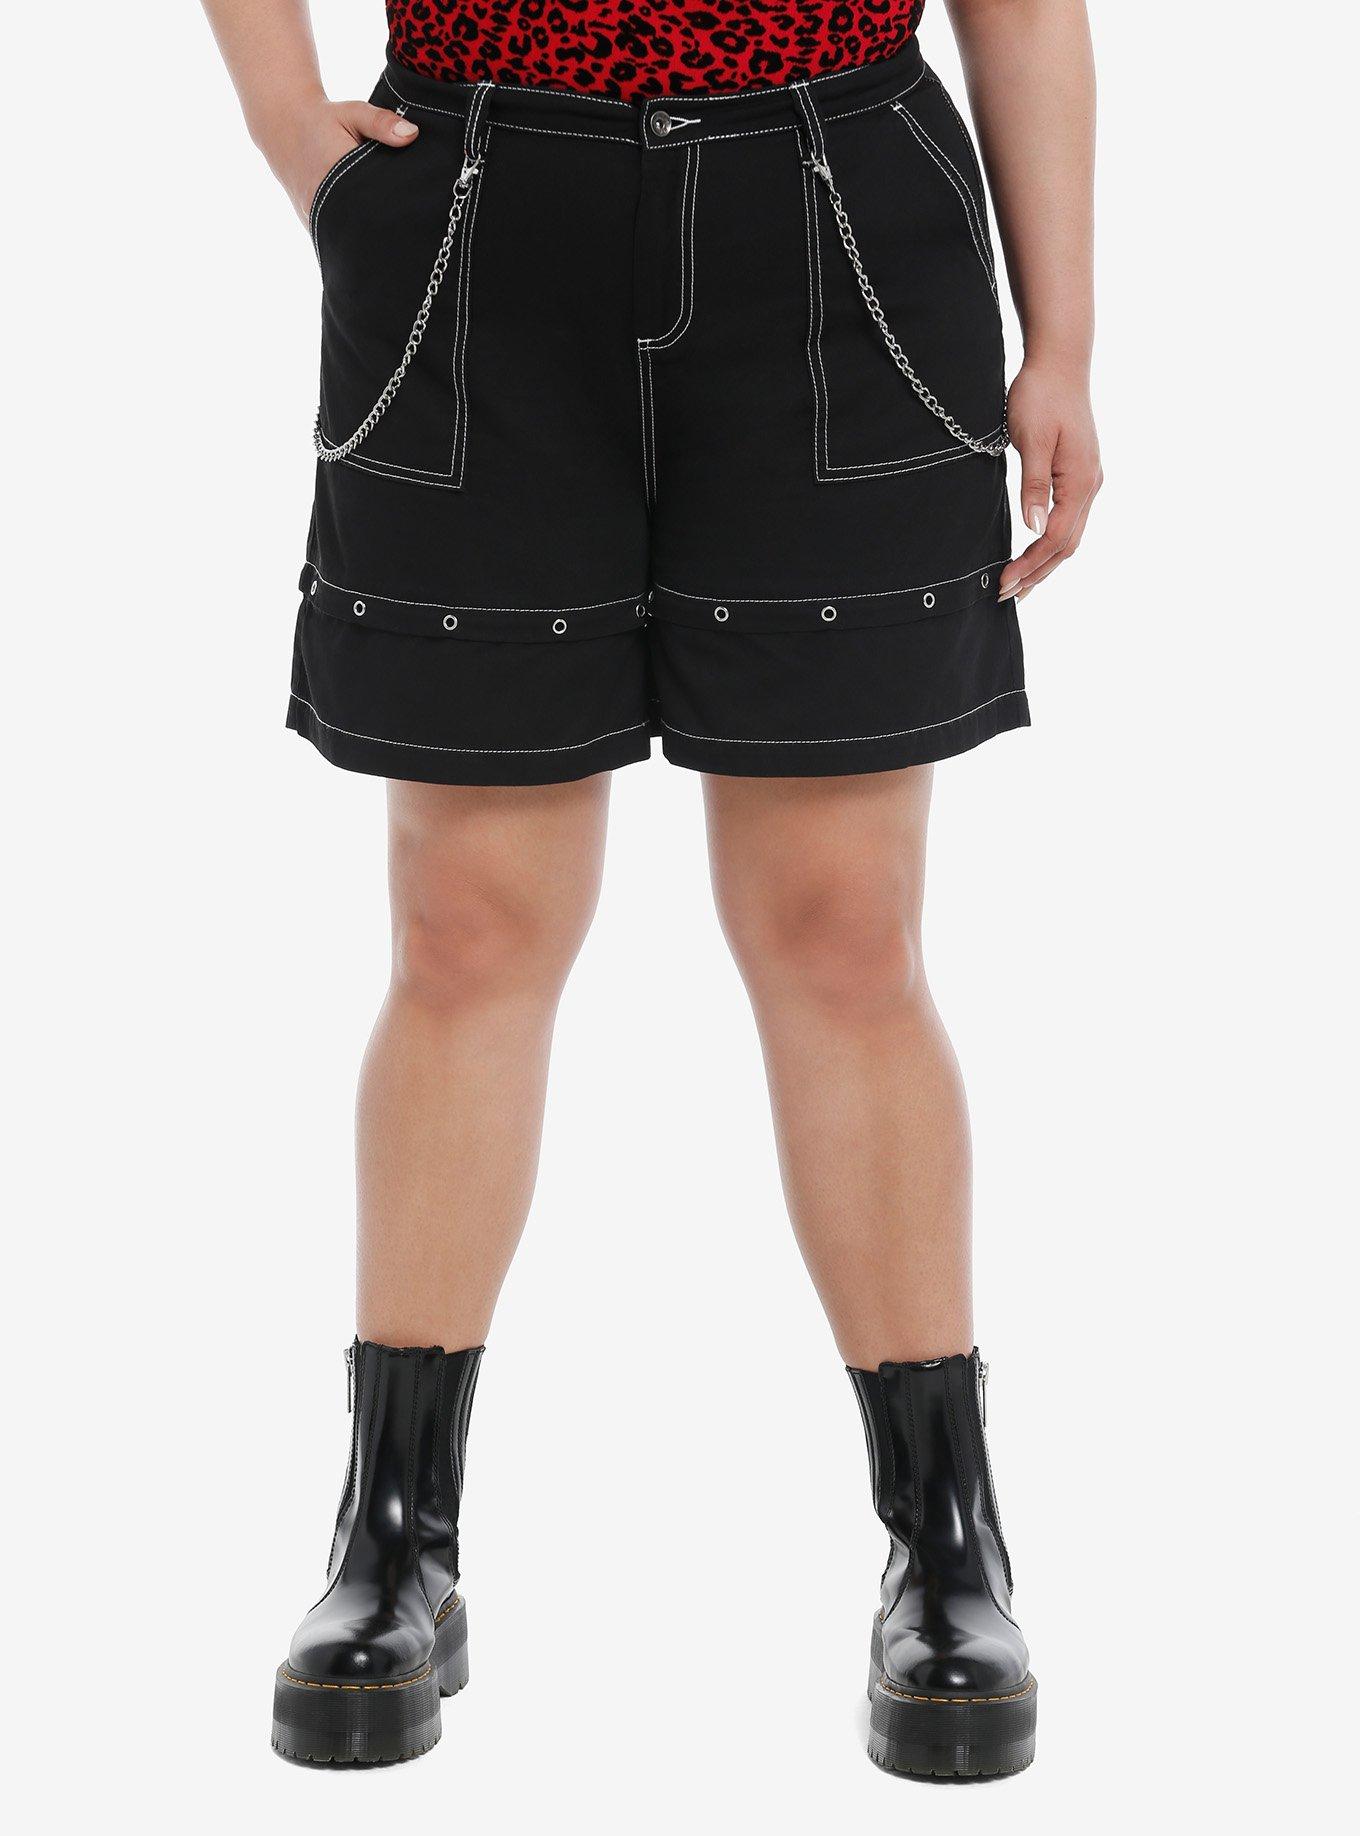 Black Double Chain Girls Carpenter Shorts Plus Size, BLACK, hi-res